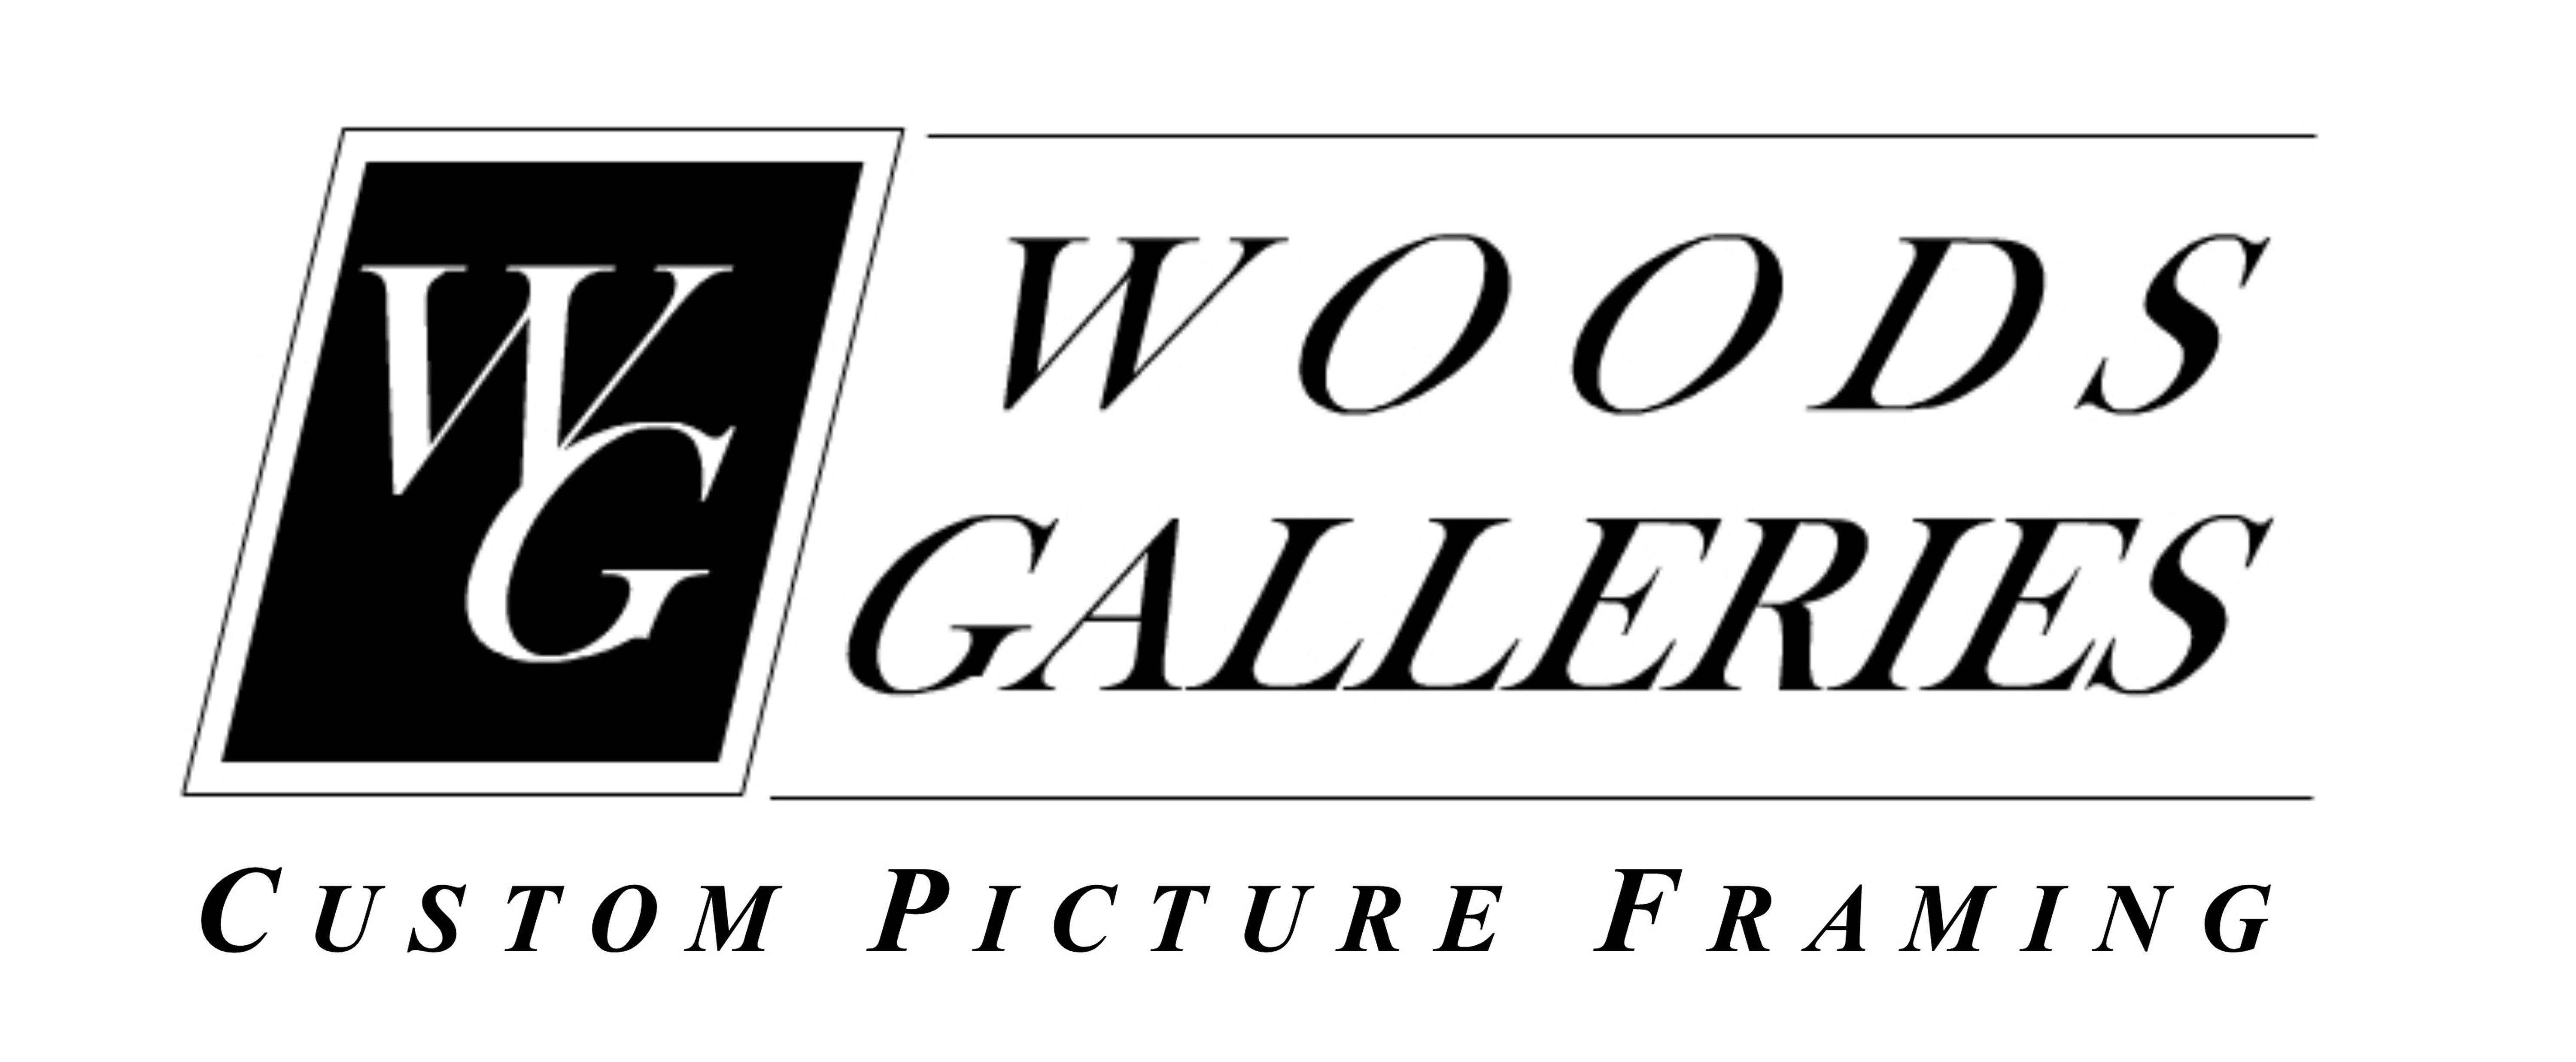 Framing Logo - Woods Galleries custom picture framing [logo] | PhanArt : Music ...